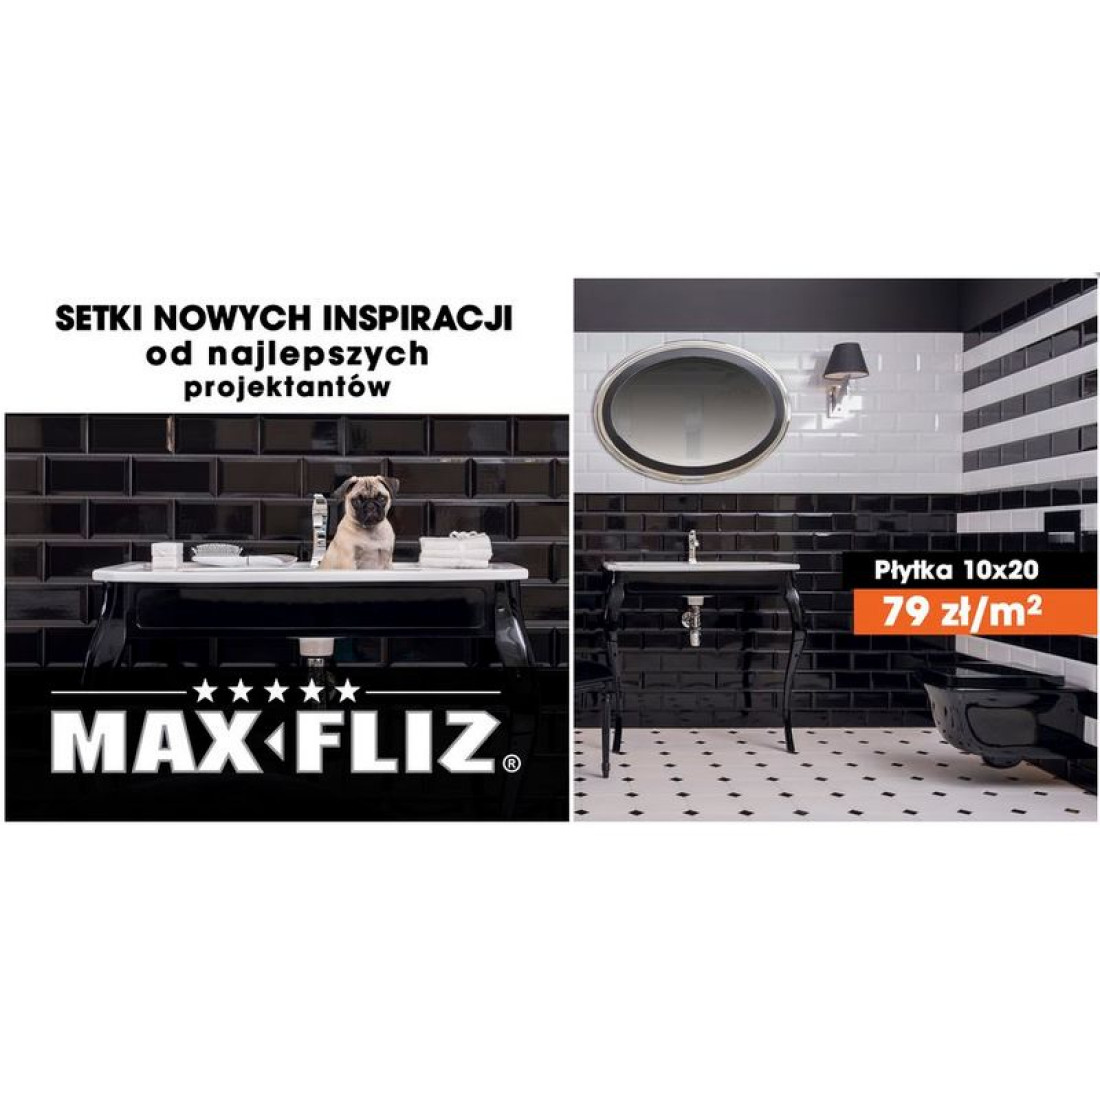 Promocja Max-Fliz: Płytki 10x20 tylko za 79zł/m2